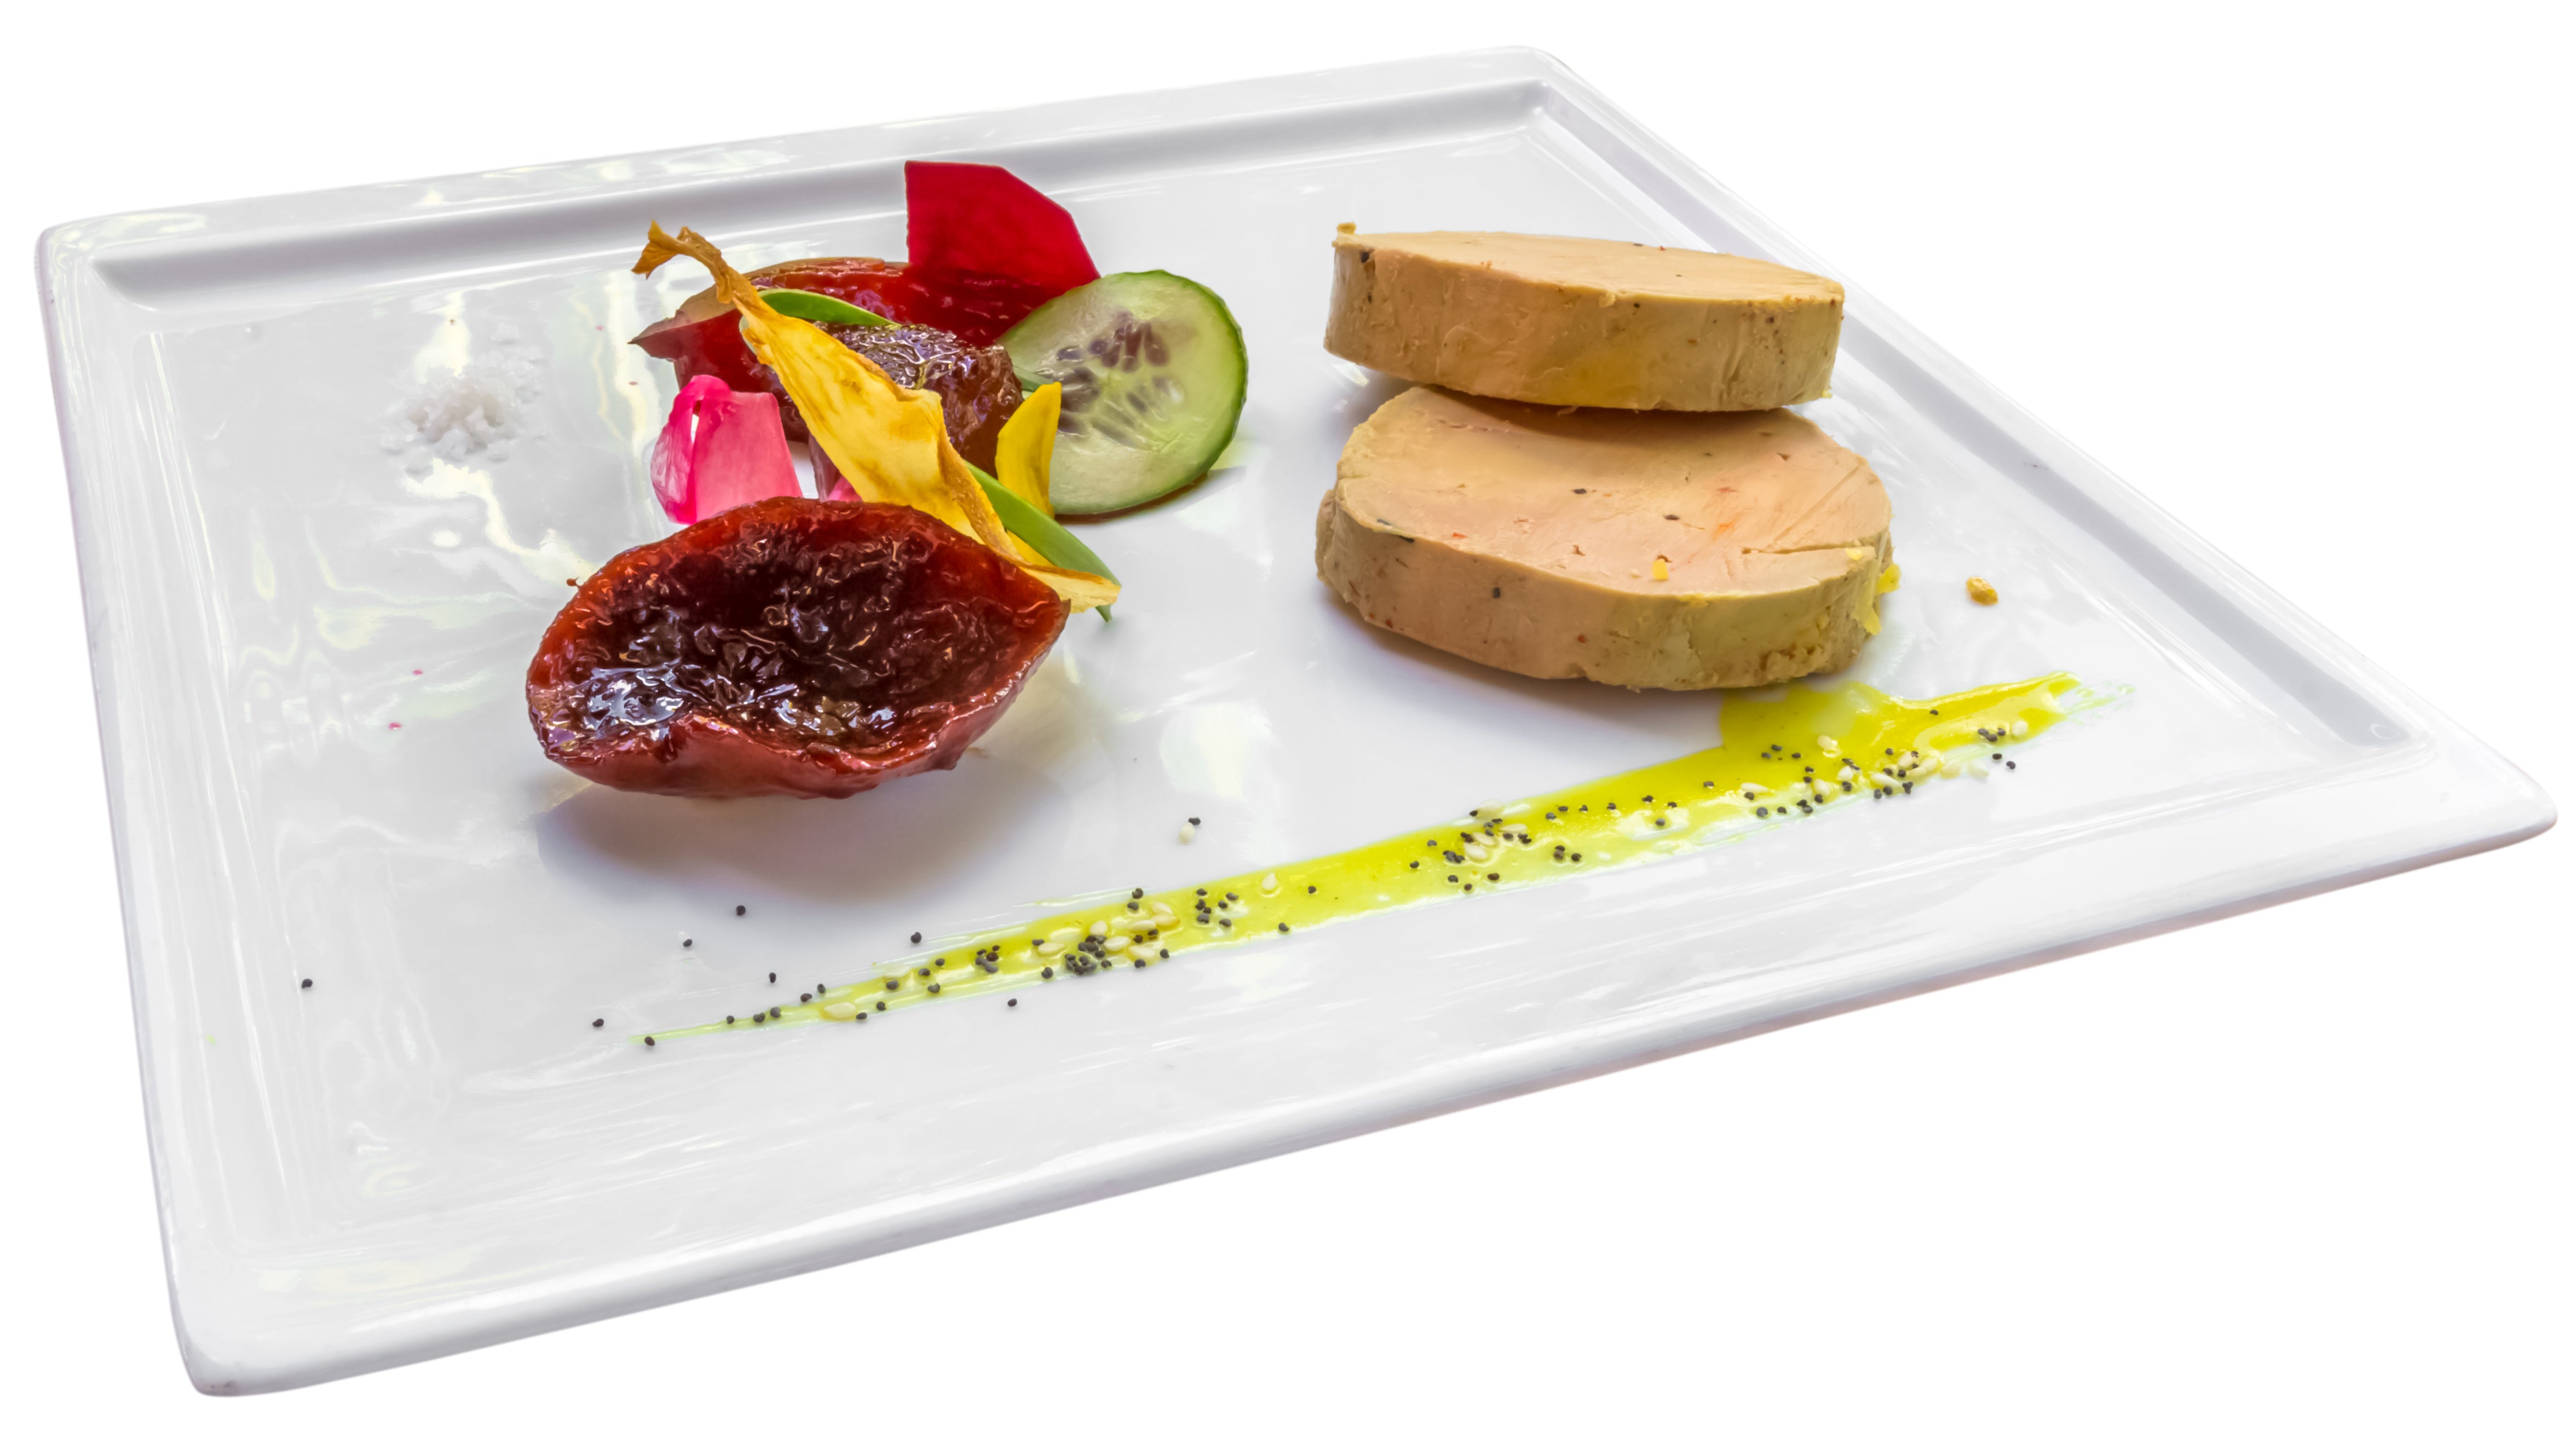 Manger du foie gras durant les fêtes est-il mauvais pour notre cholestérol ?